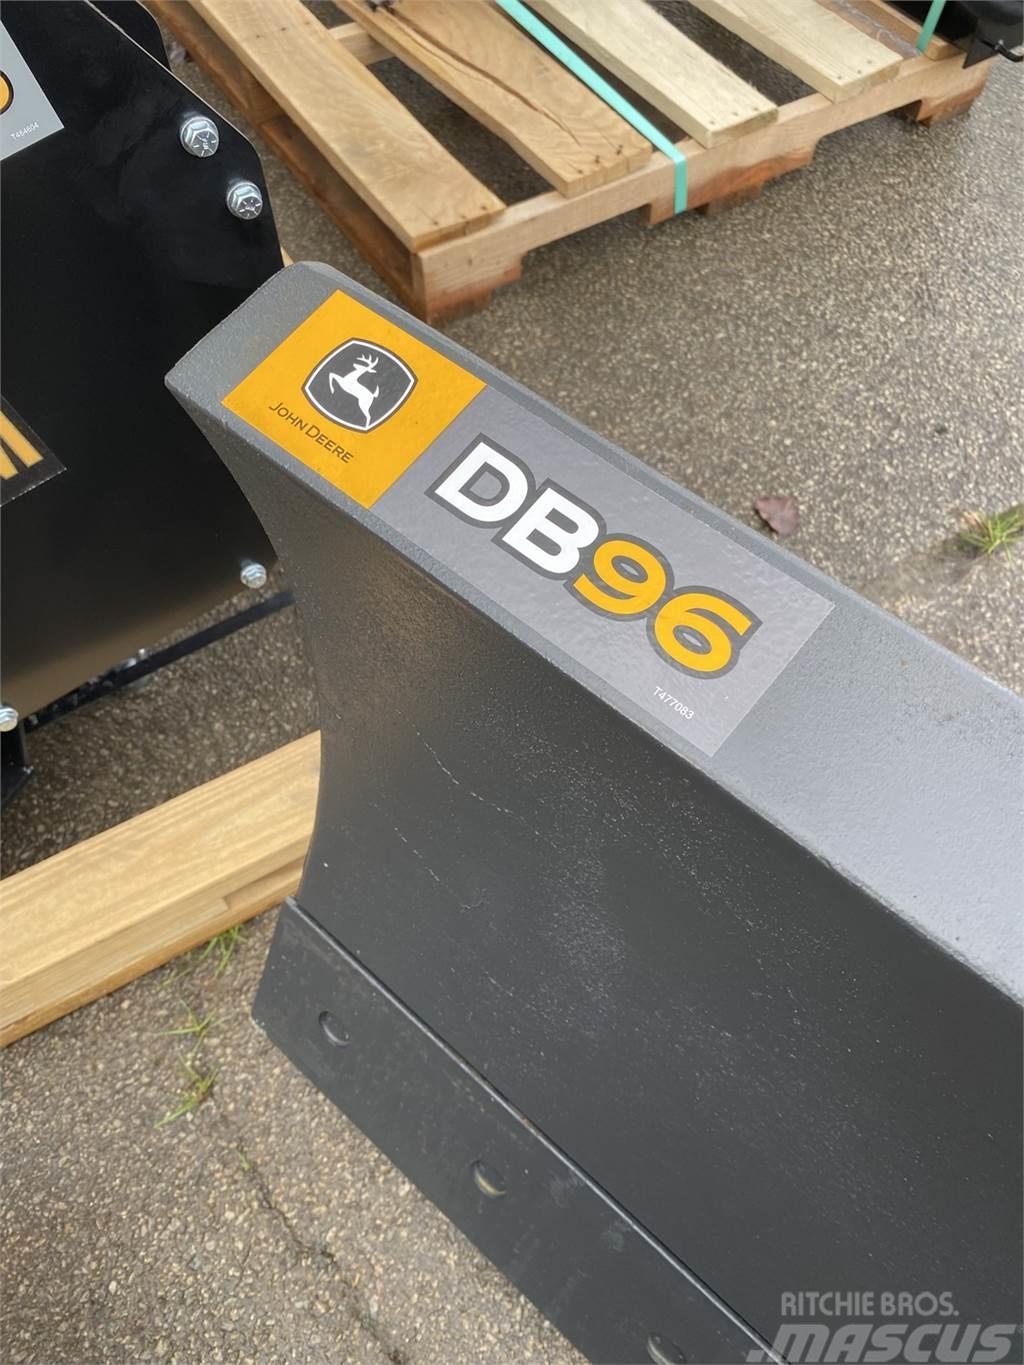 John Deere DB96 Ostalo za građevinarstvo